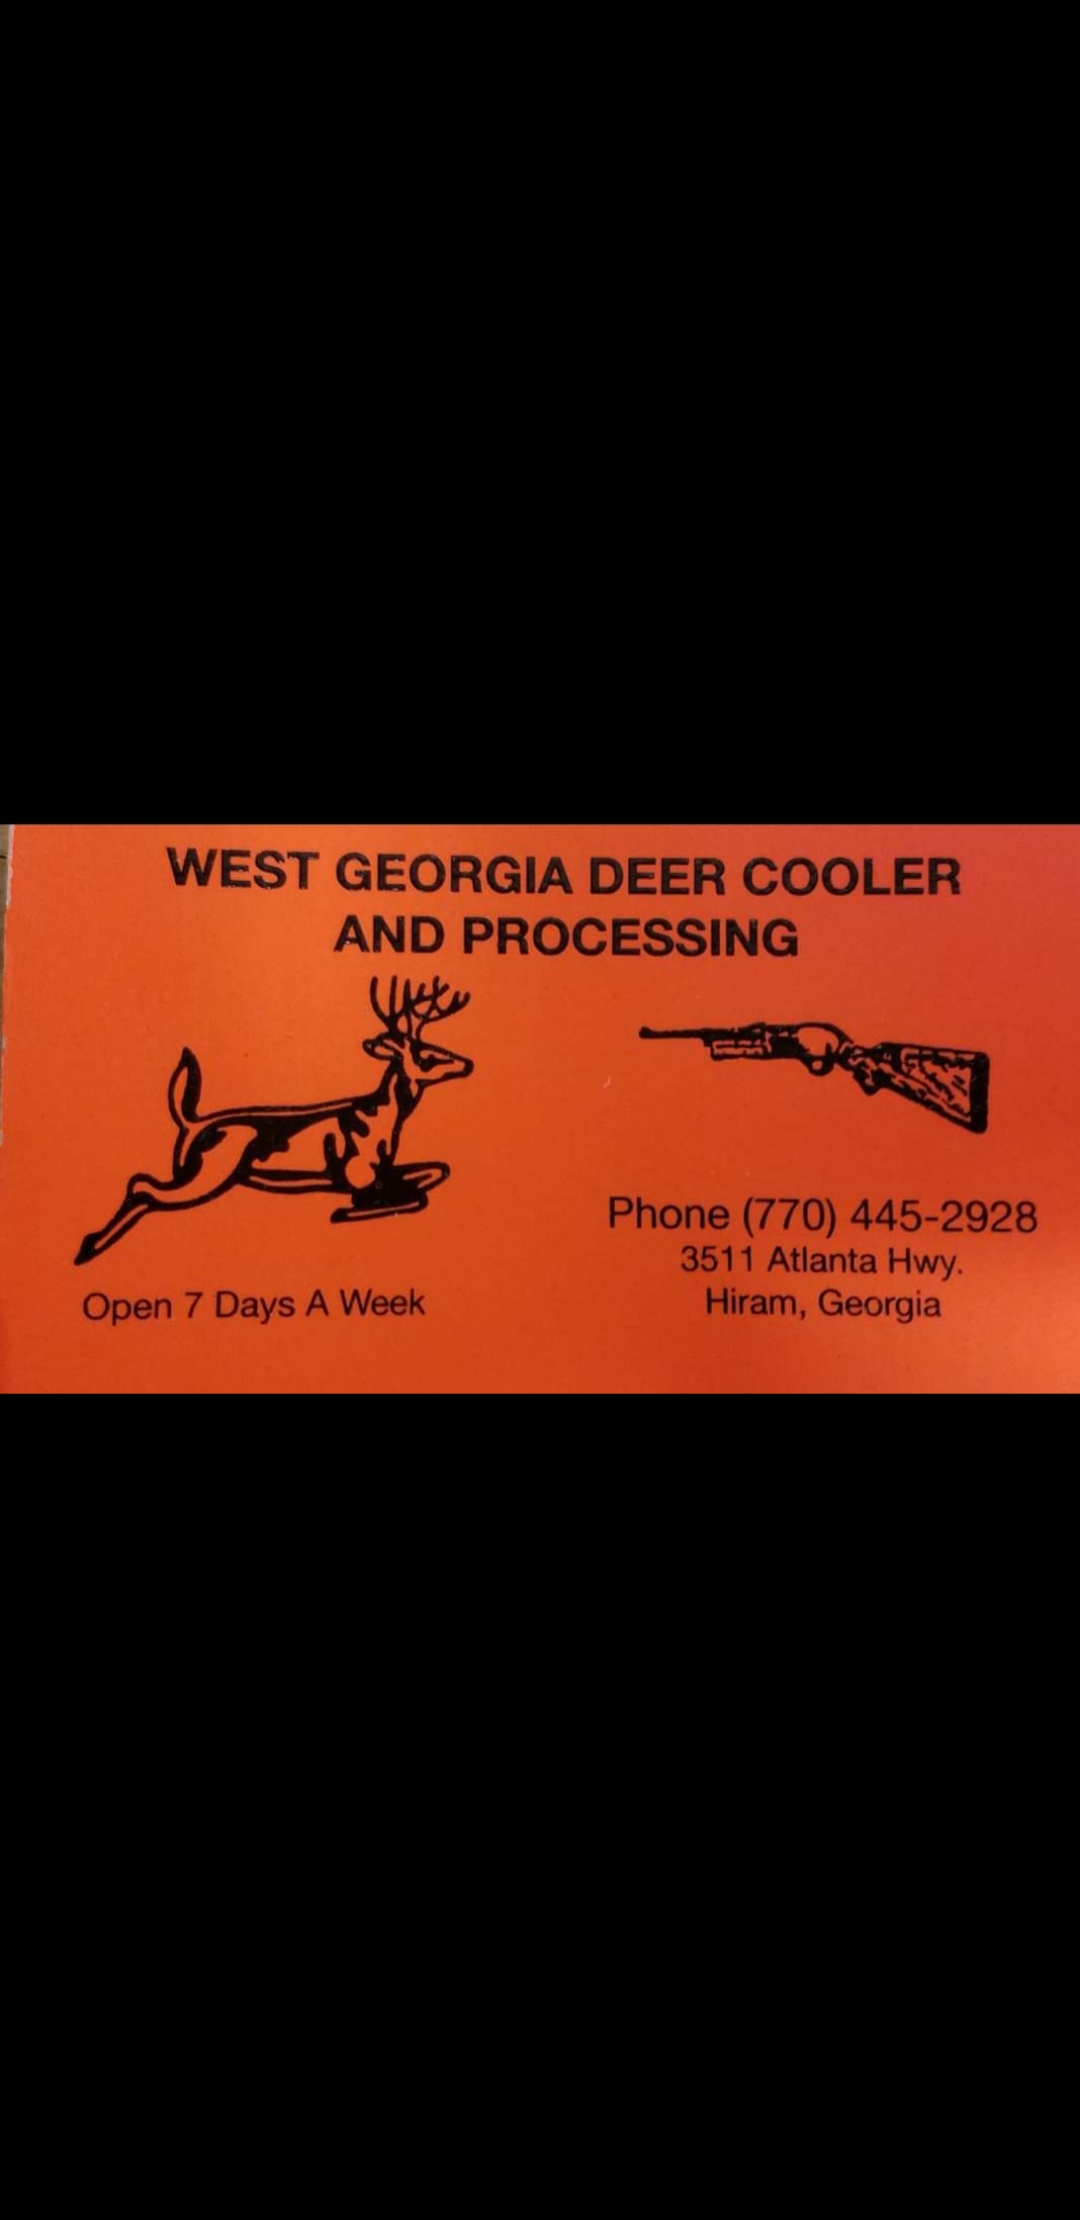 West Georgia Deer Cooler